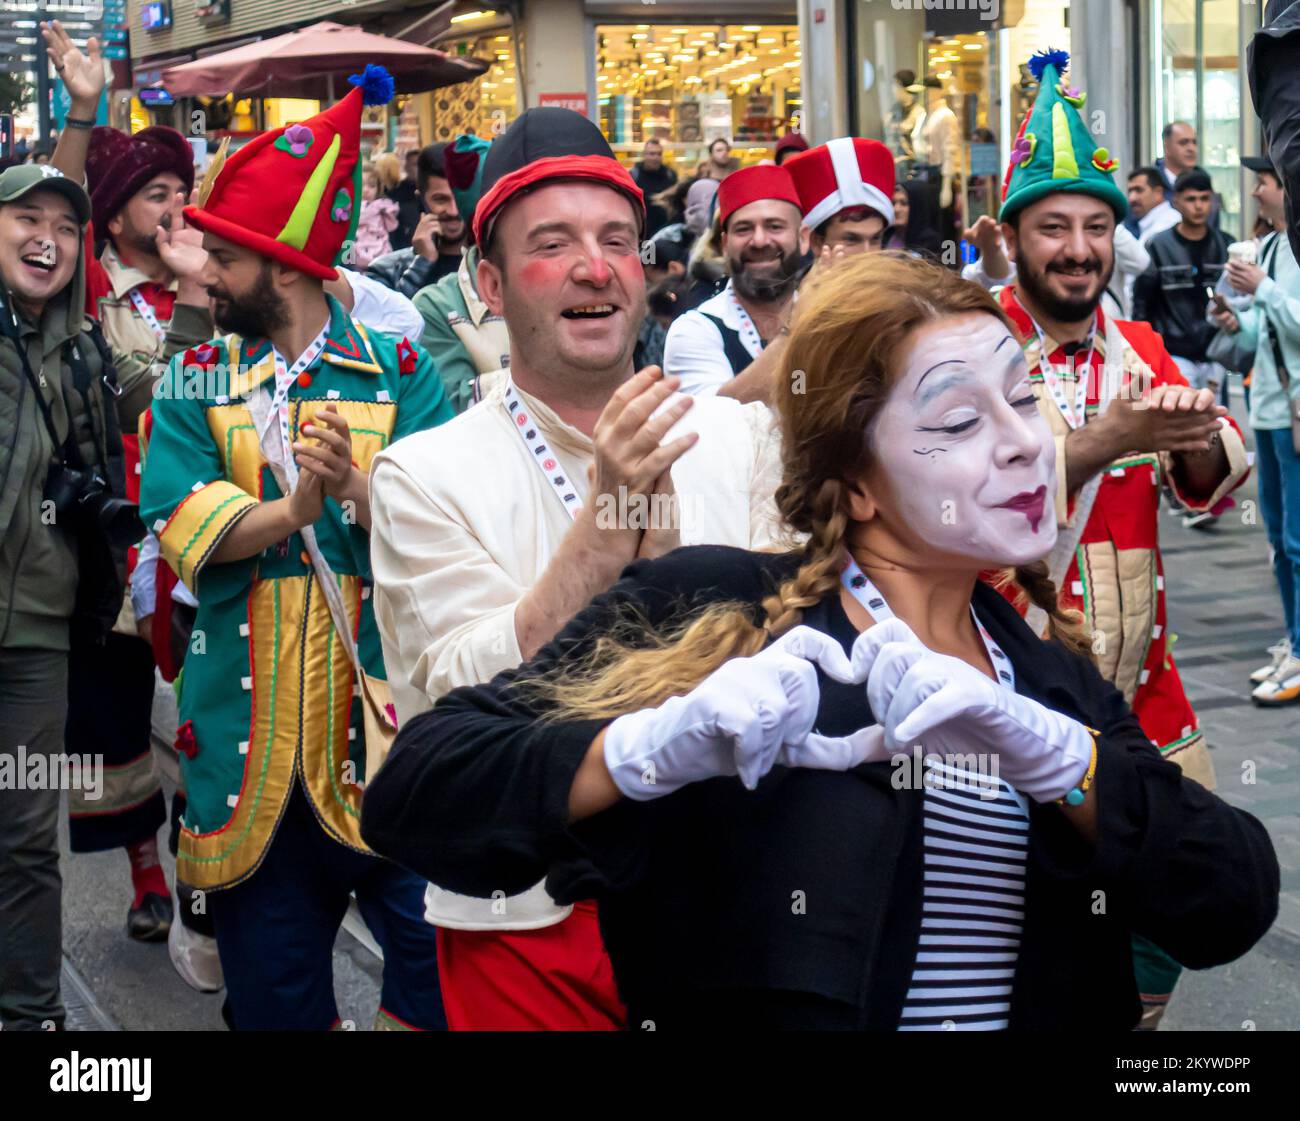 Istanbul culture: Gruppo di artisti di strada memes in make-up, con strumenti musicali che ballano lungo la strada Istiklal in mezzo alla folla. Turchia Foto Stock